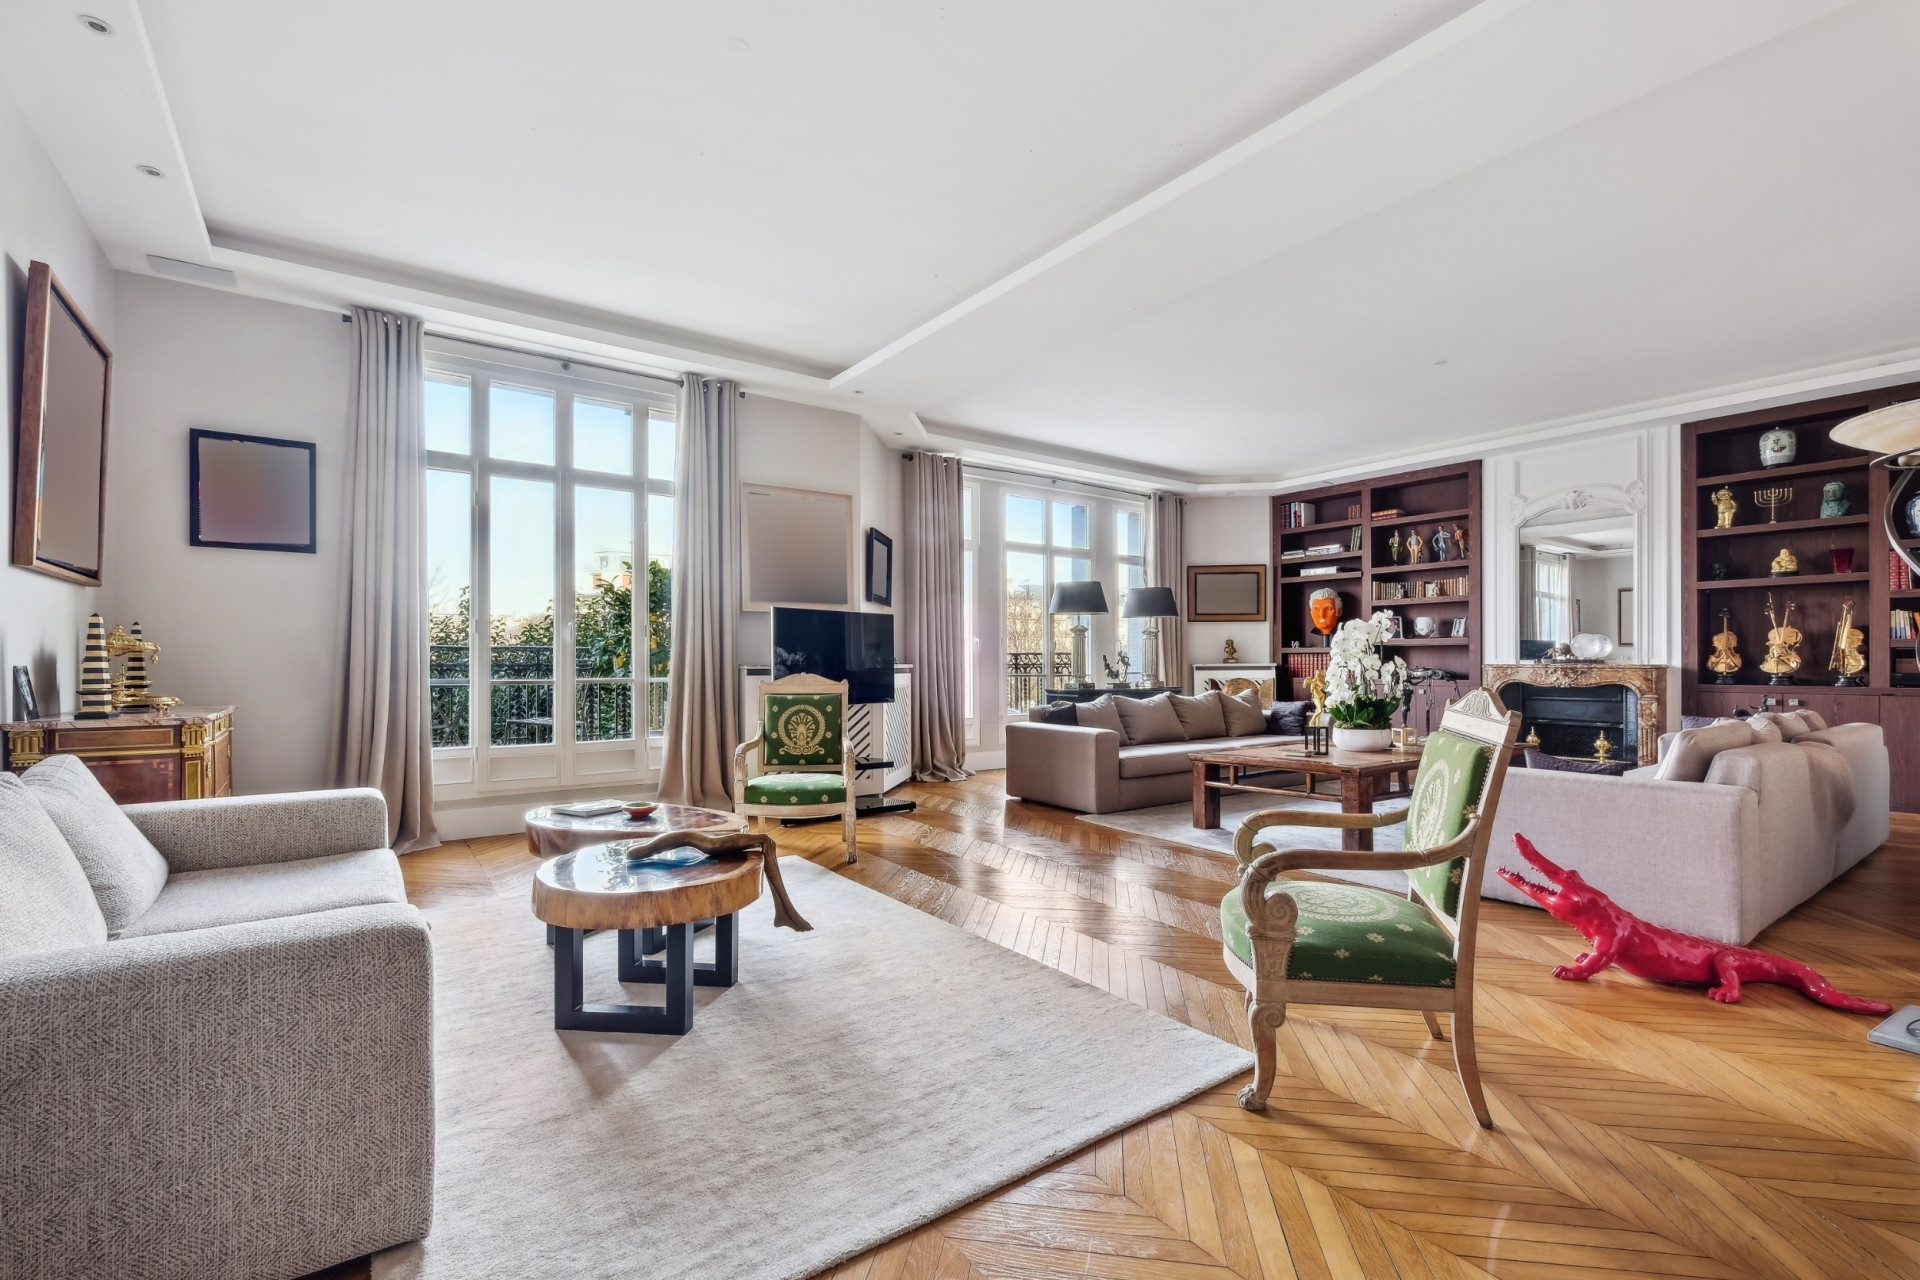 Ексклузивен апартамент на една от най-престижните улици в Париж - Авеню Фош